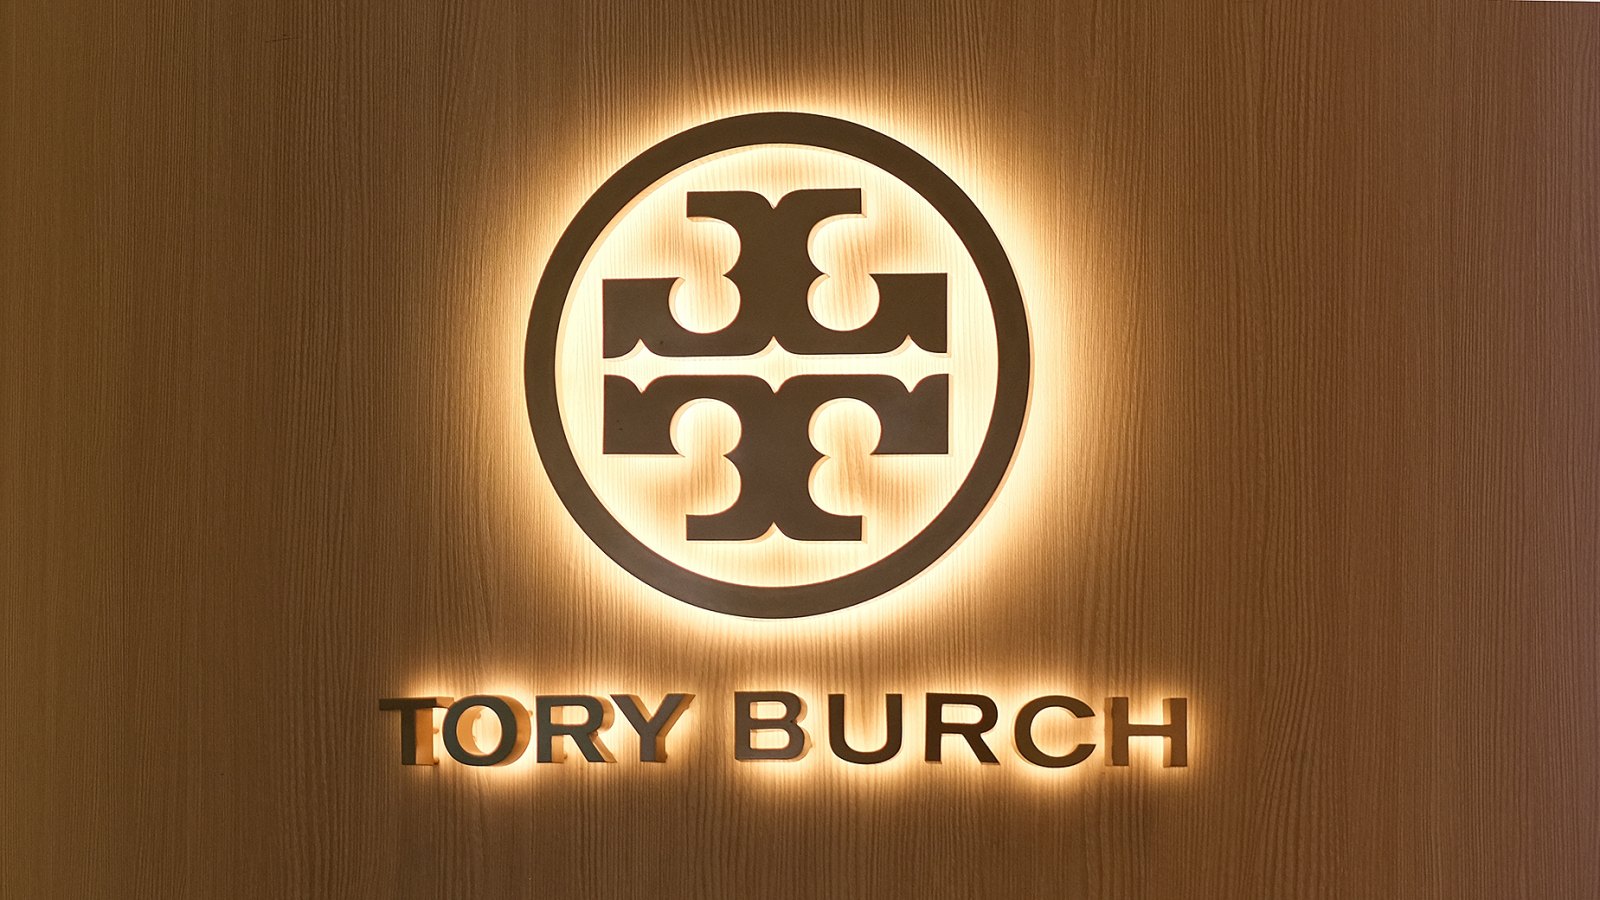 Thương hiệu tory burch logo thời trang cao cấp và sang trọng